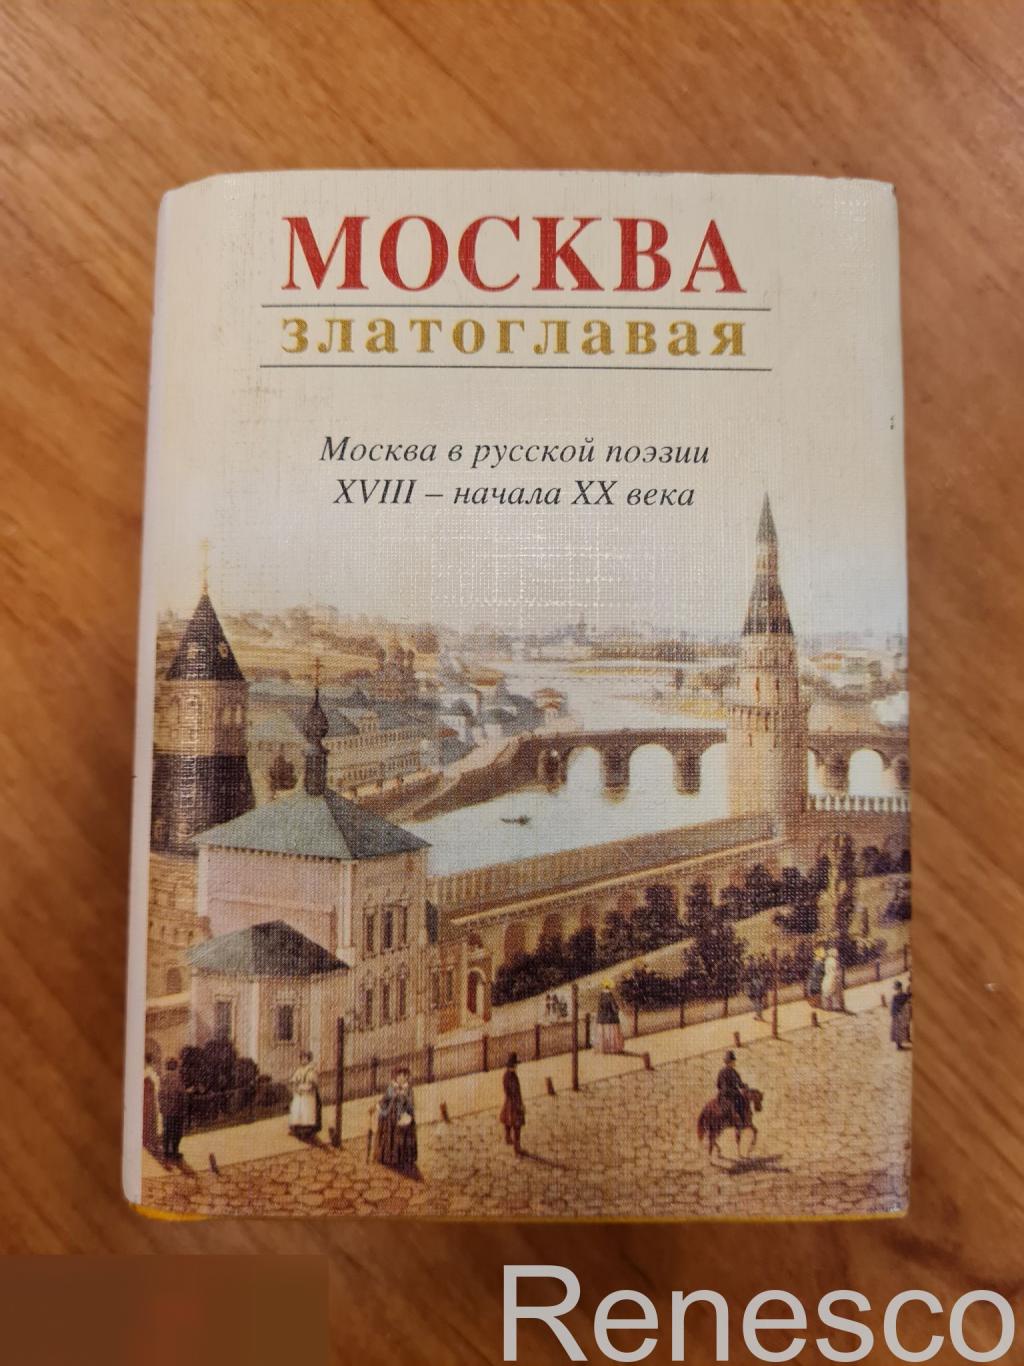 Мини книга издани Москва Златоглавая 2008